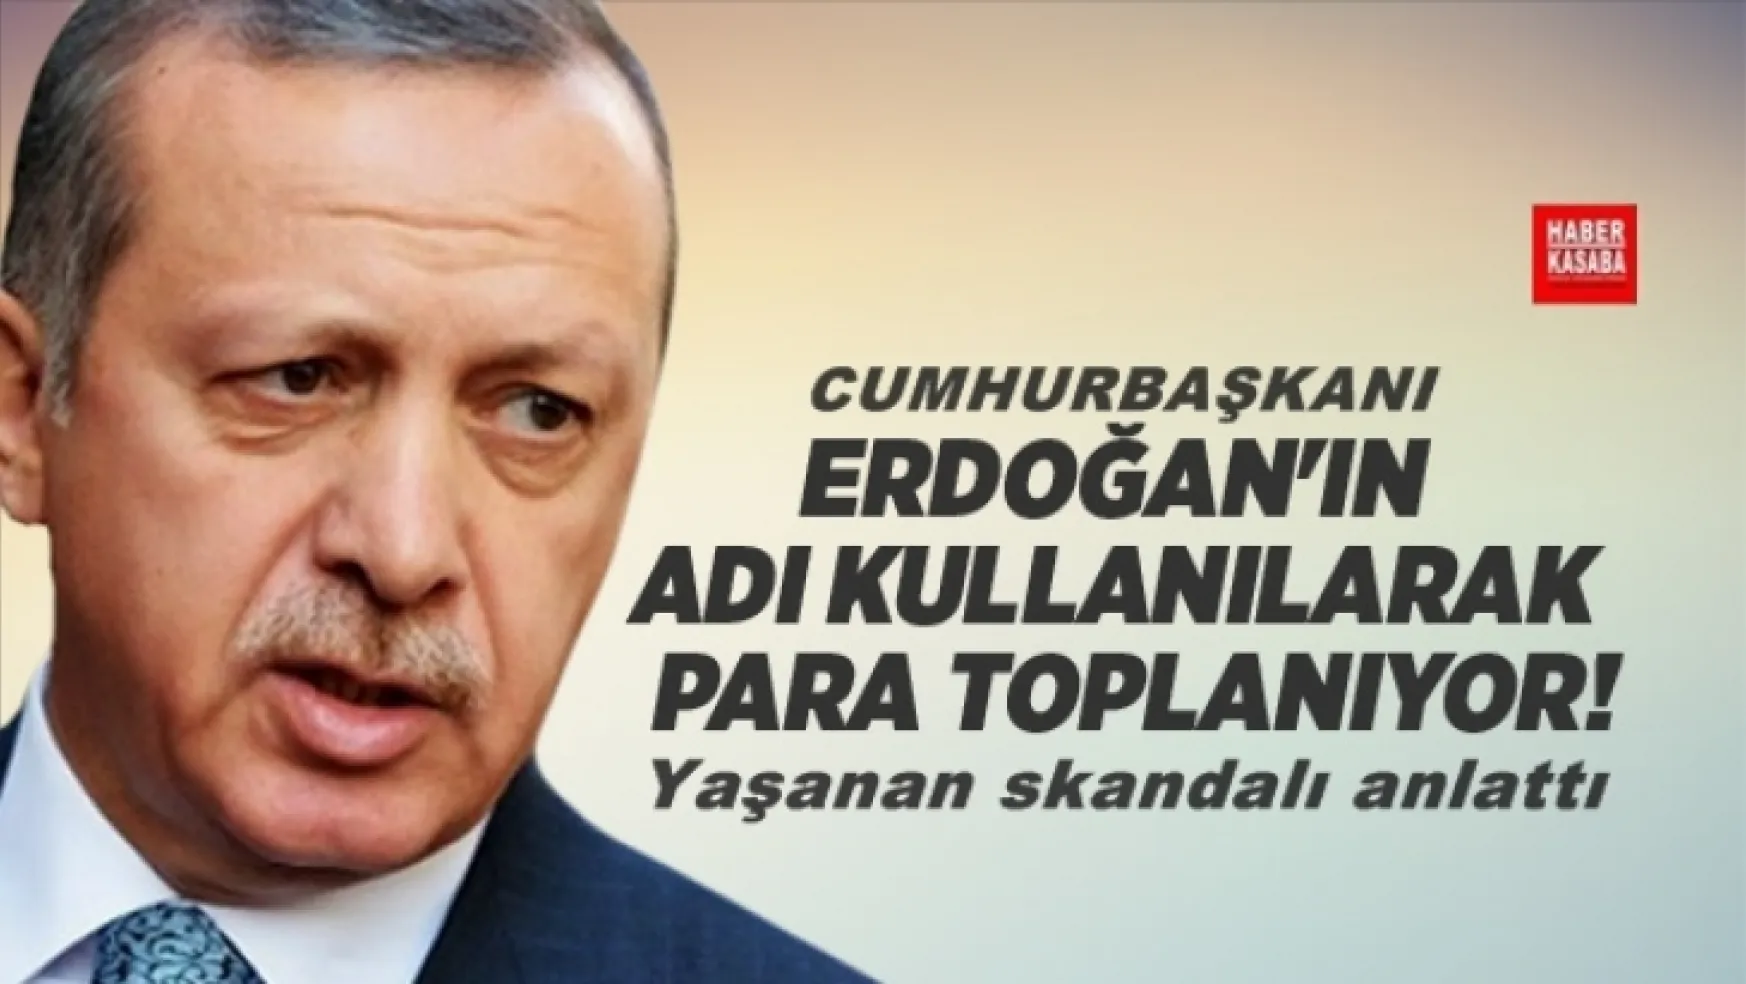 Erdoğan'ın adı kullanılarak para toplanıyor